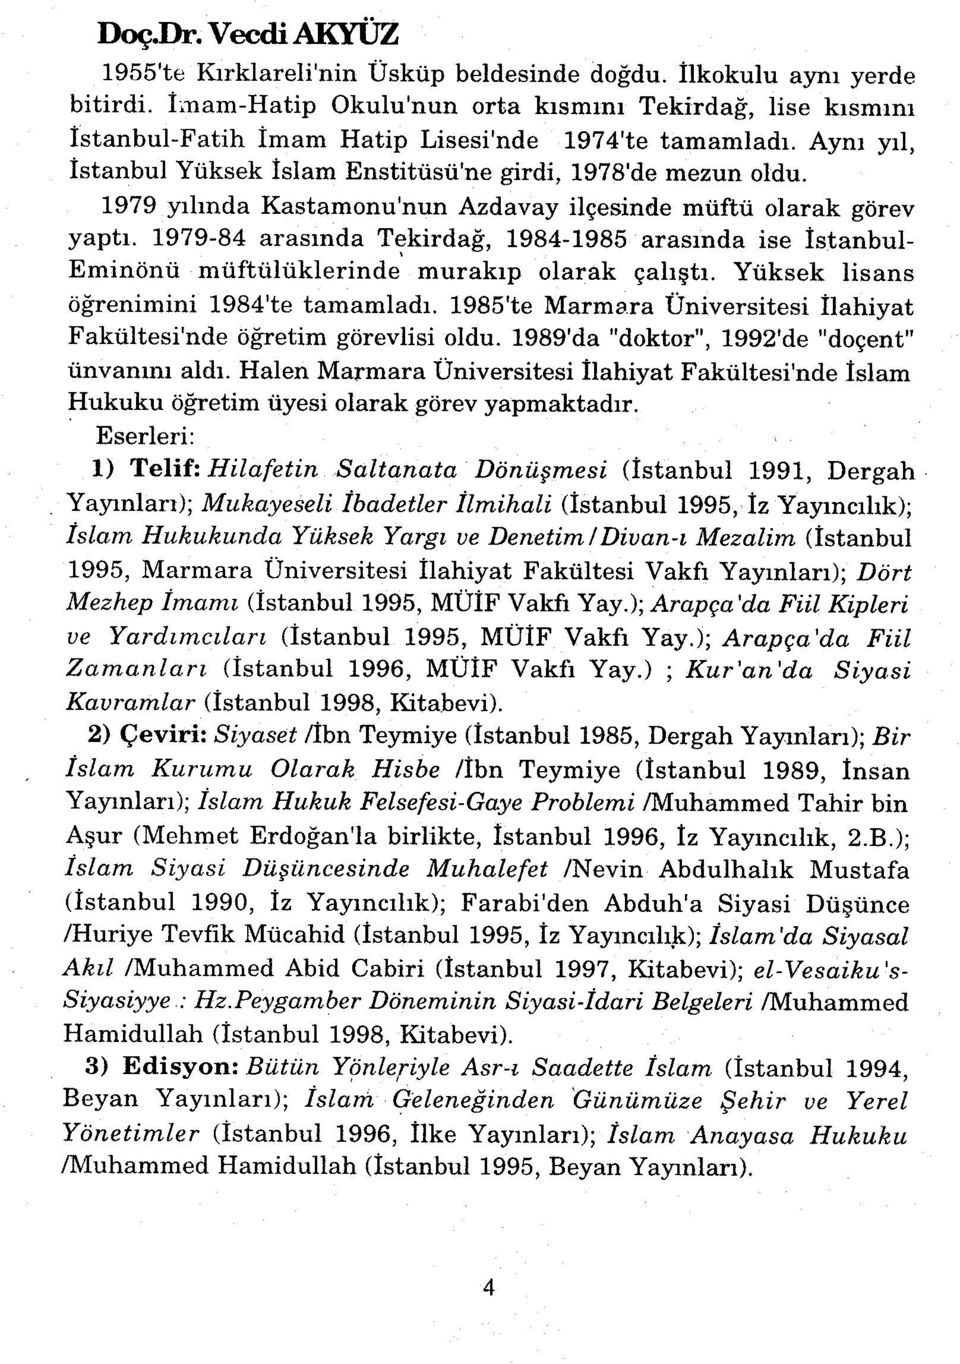 1979 yılında Kastamonu'nun Azdavay ilçesinde müftü olarak görev yaptı. 1979-84 arasında Tekirdağ, 1984-1985 arasında ise İstanbul- Eminönü müftülüklerinde murakıp olarak çalıştı.